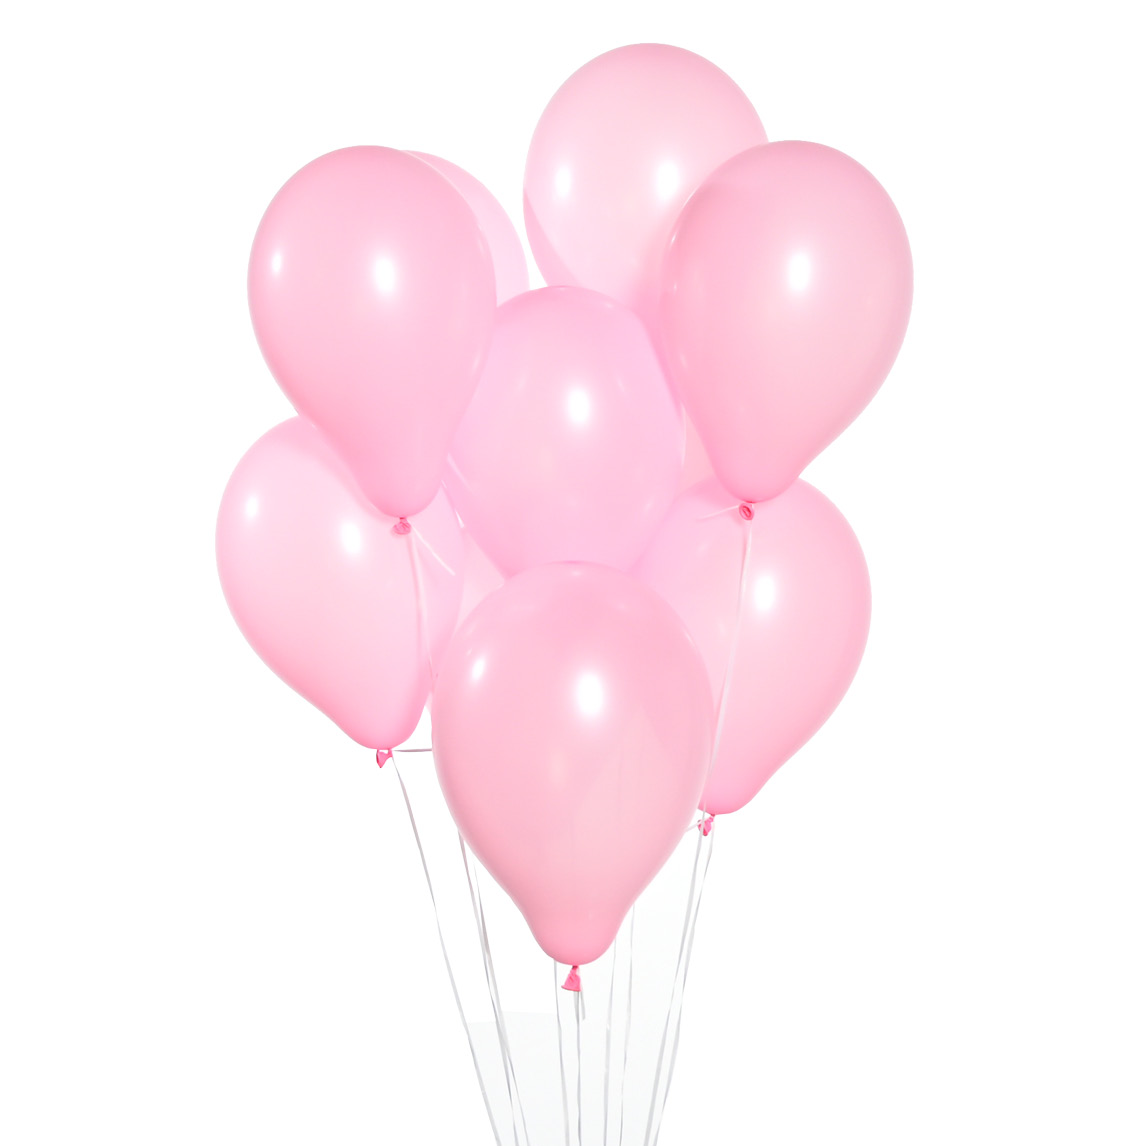 Воздушные шары Розовые 9 шт. воздушные шары из фольги 16 дюймов 32 дюйма 0 9 цифр 9 цветов шарики для день рождения